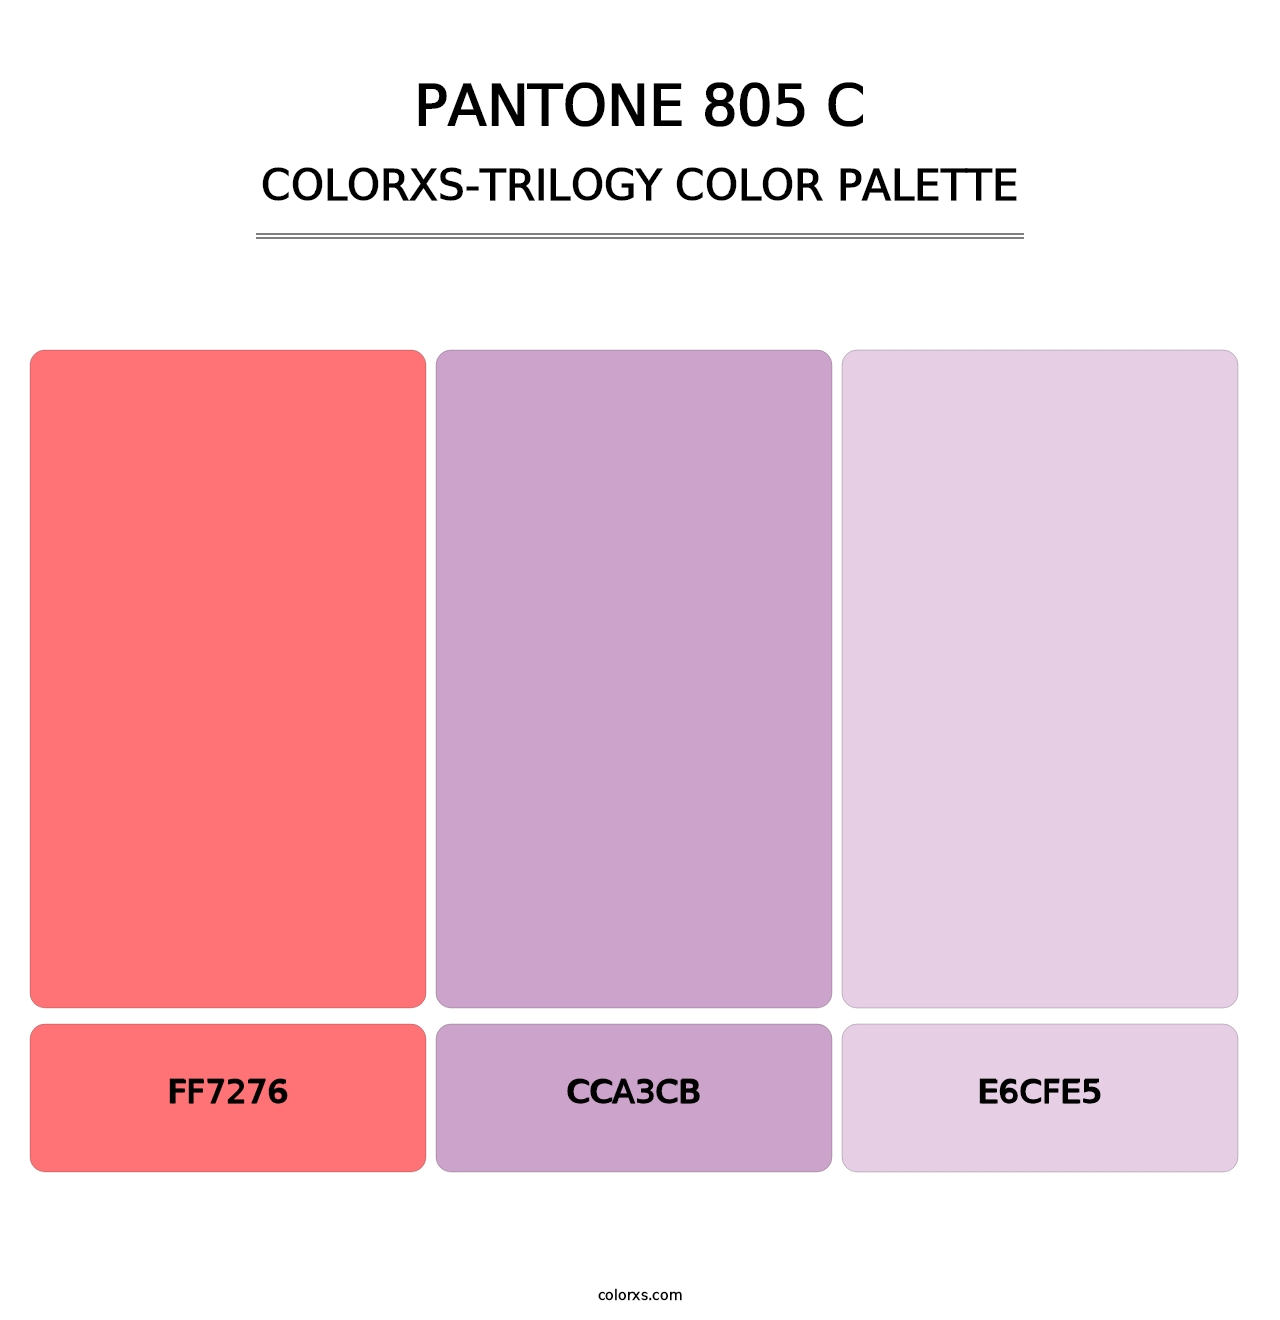 PANTONE 805 C - Colorxs Trilogy Palette